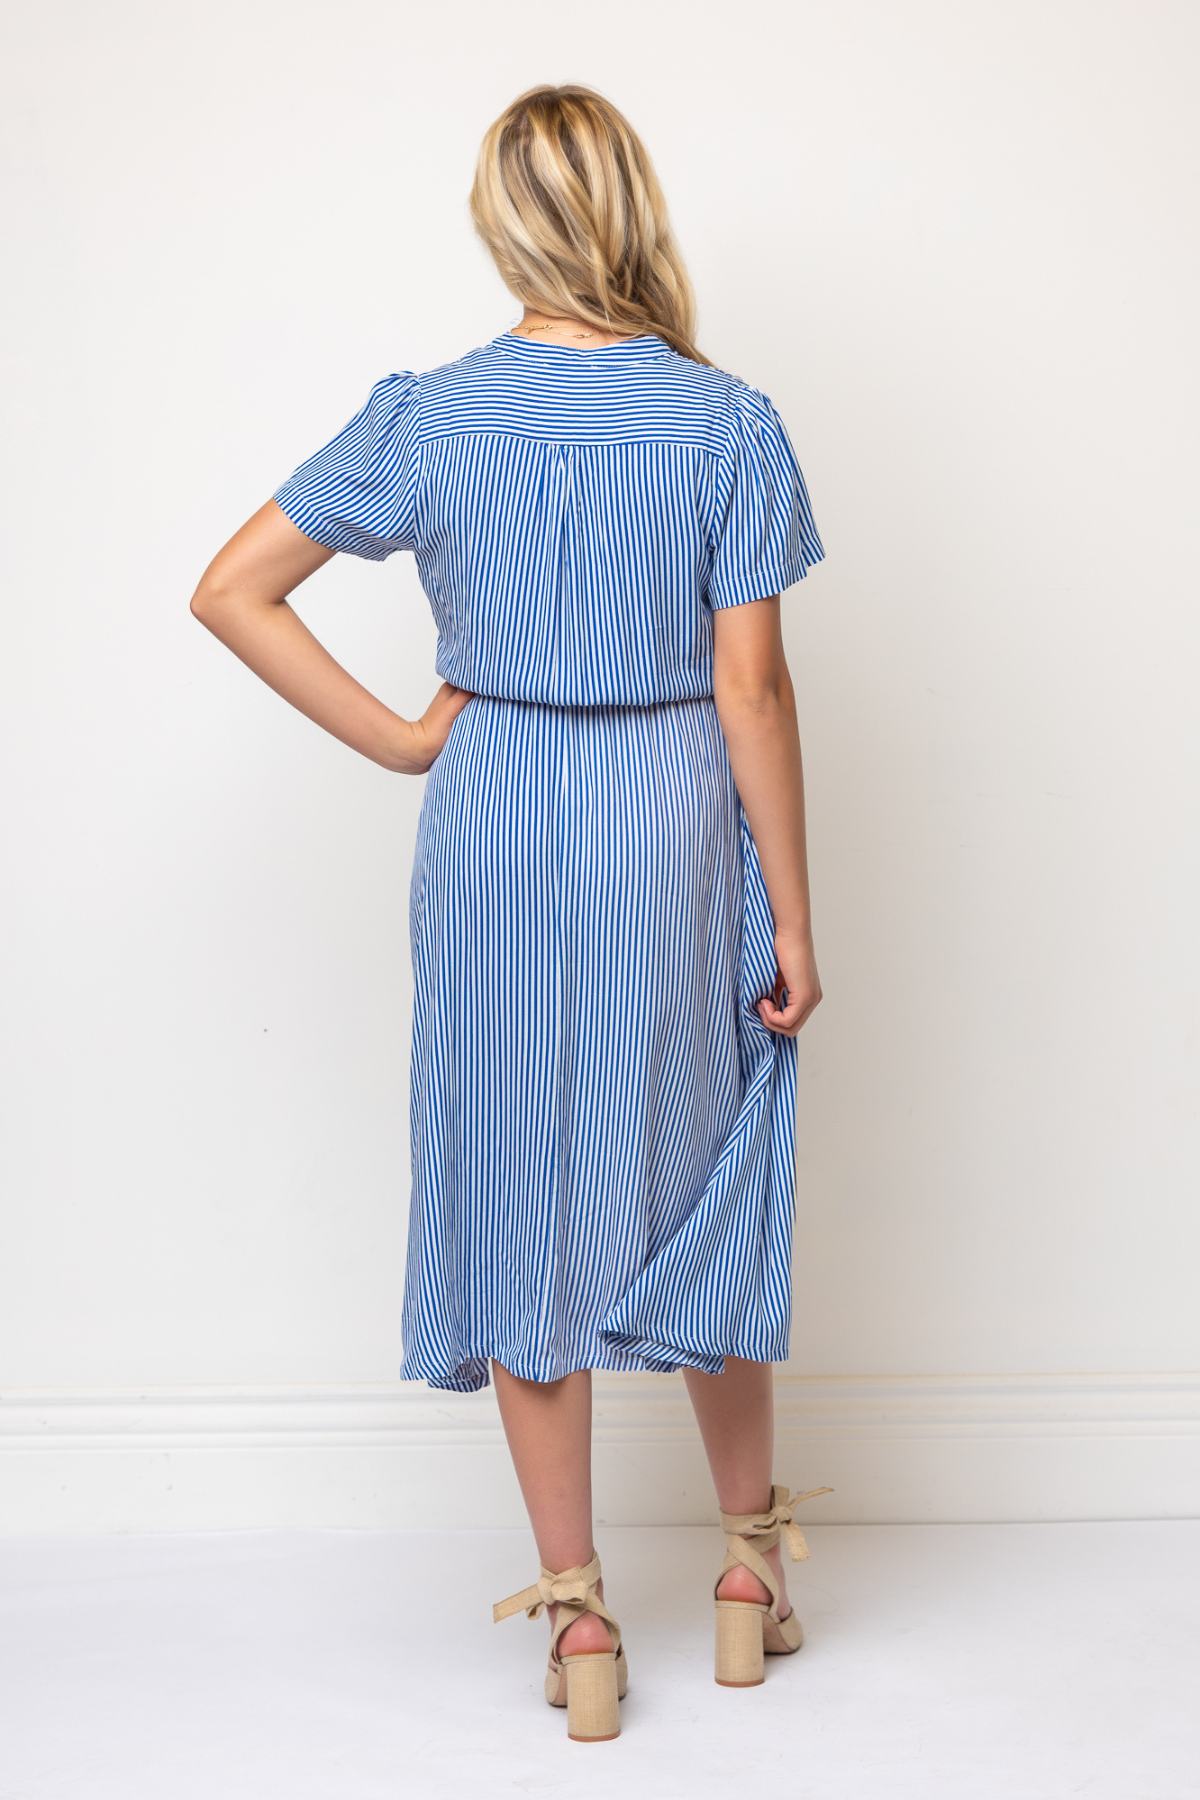 Zelie Shirt Dress in Blue & White Contrast Stripe